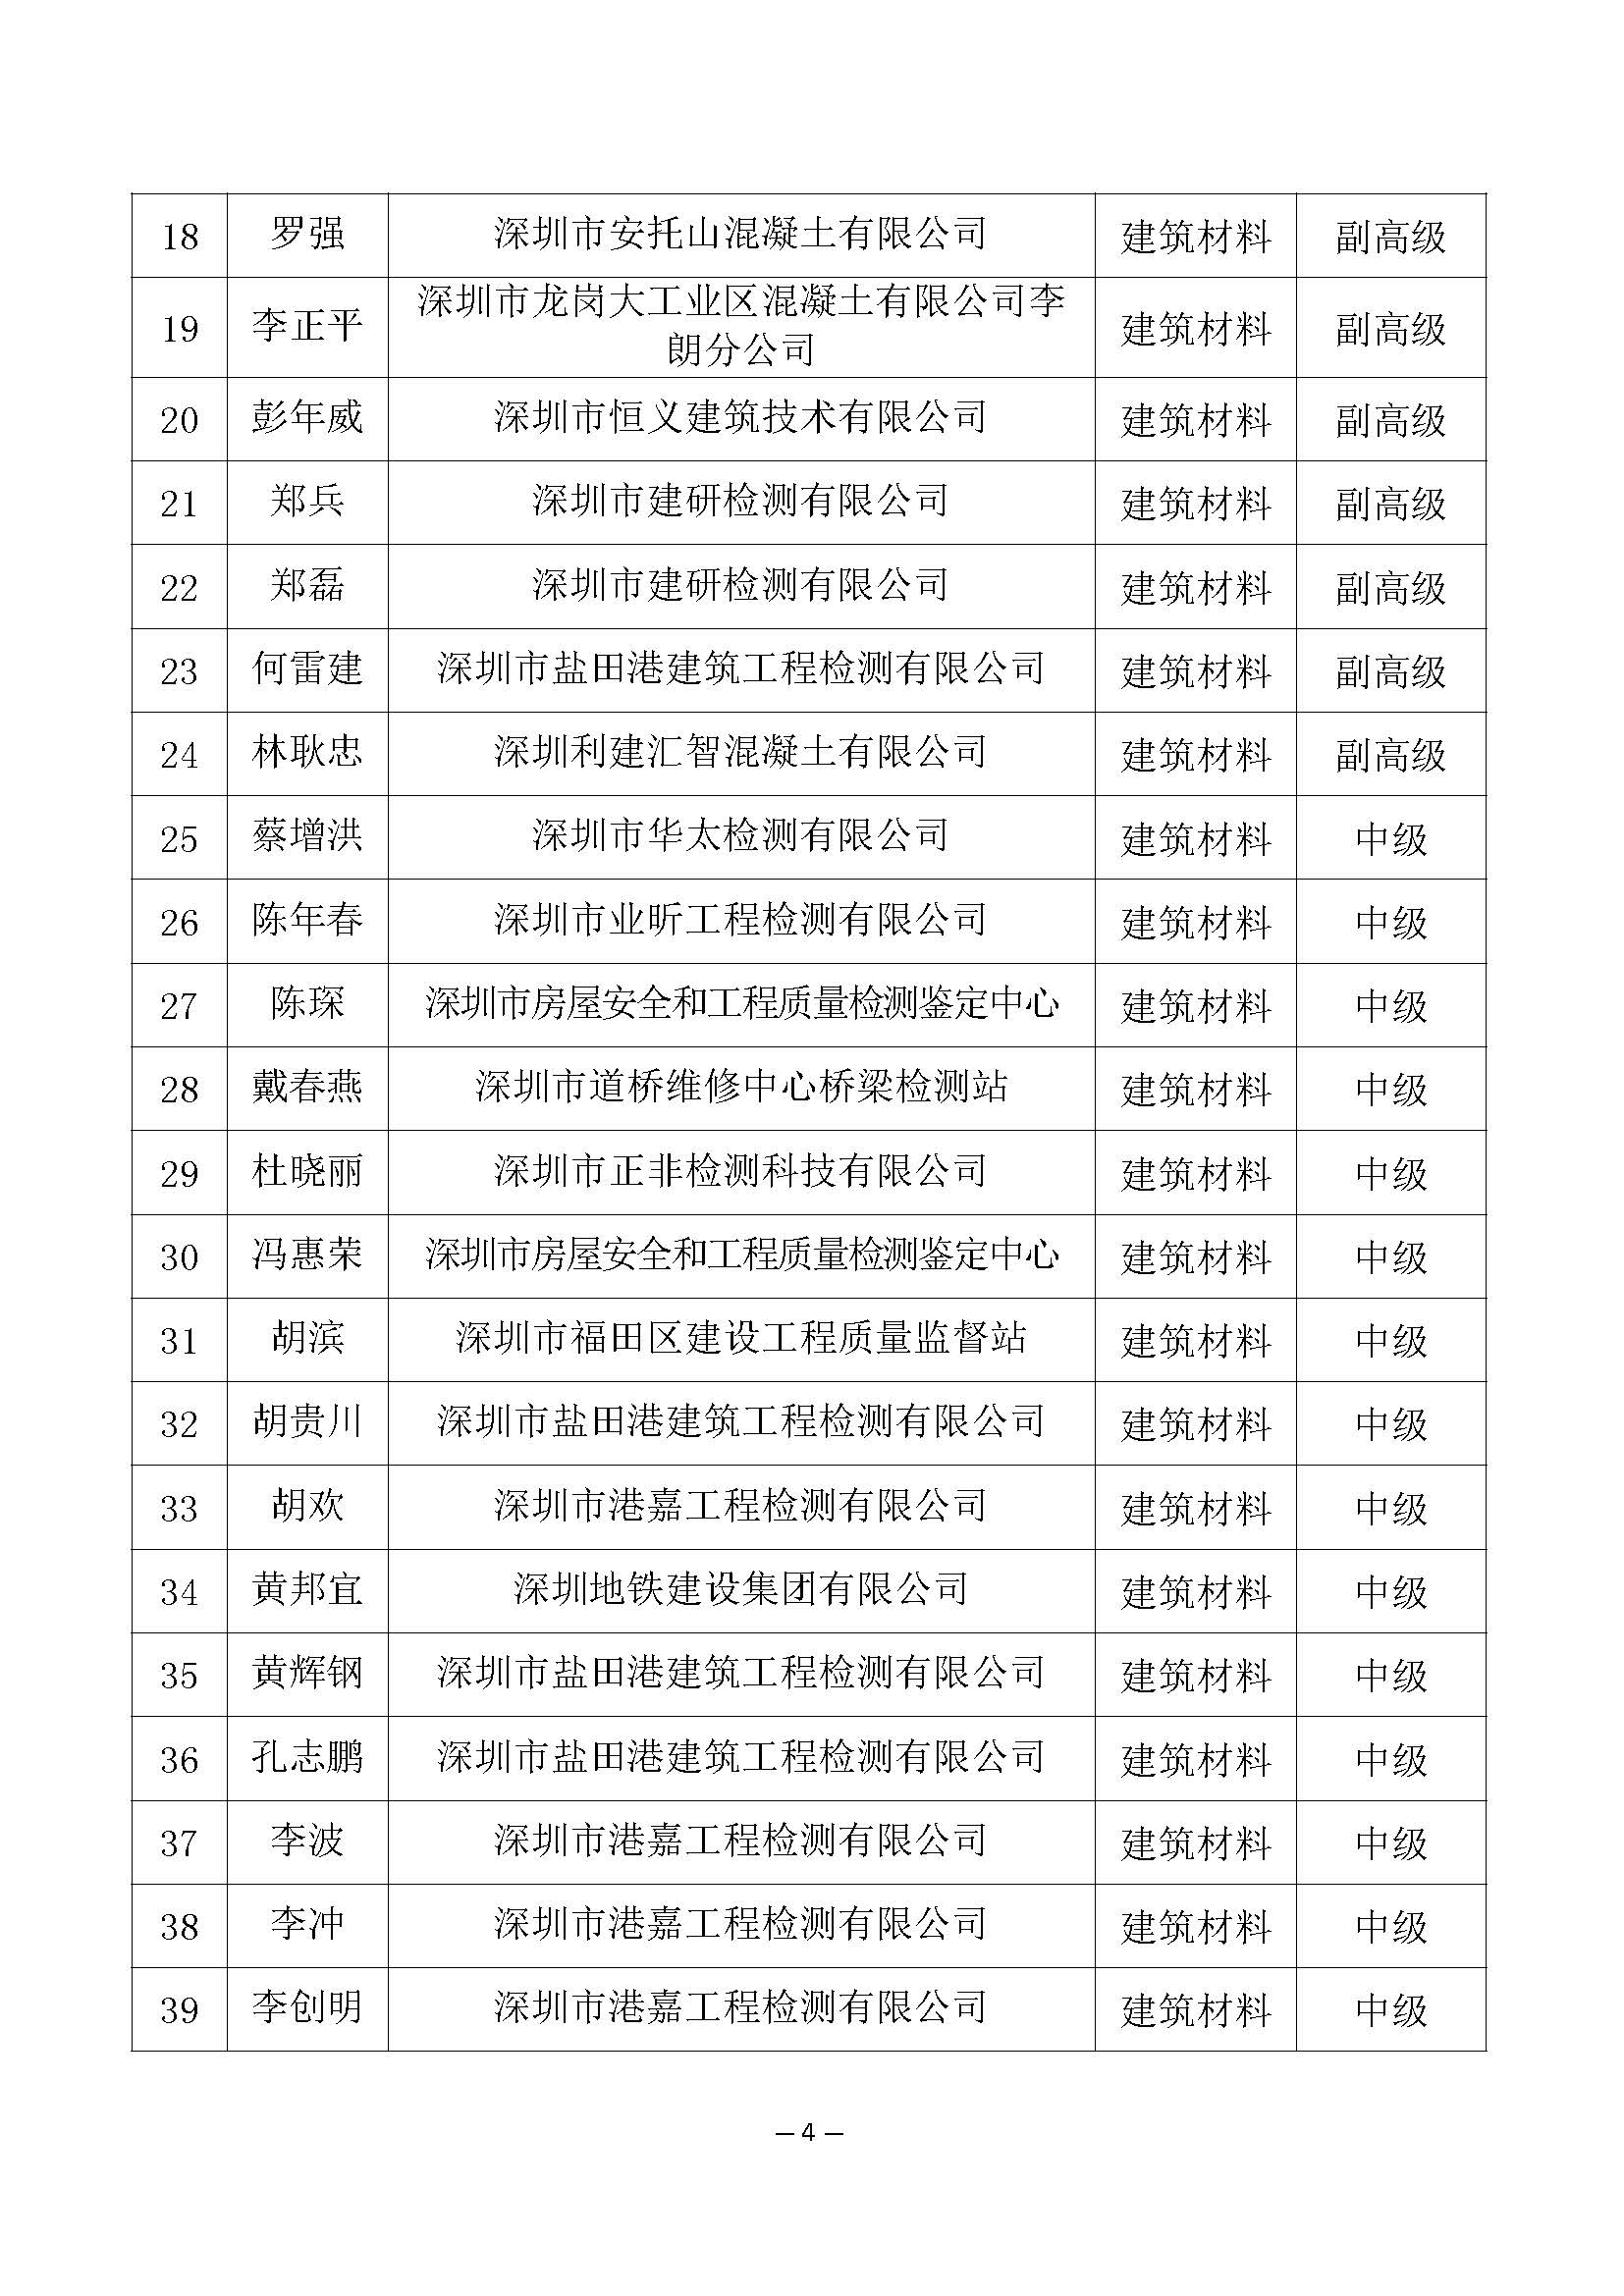 2021年度深圳市建筑材料专业高级职称评审委员会建筑材料专业高、中、初级职称评审通过人员公示_页面_4.jpg